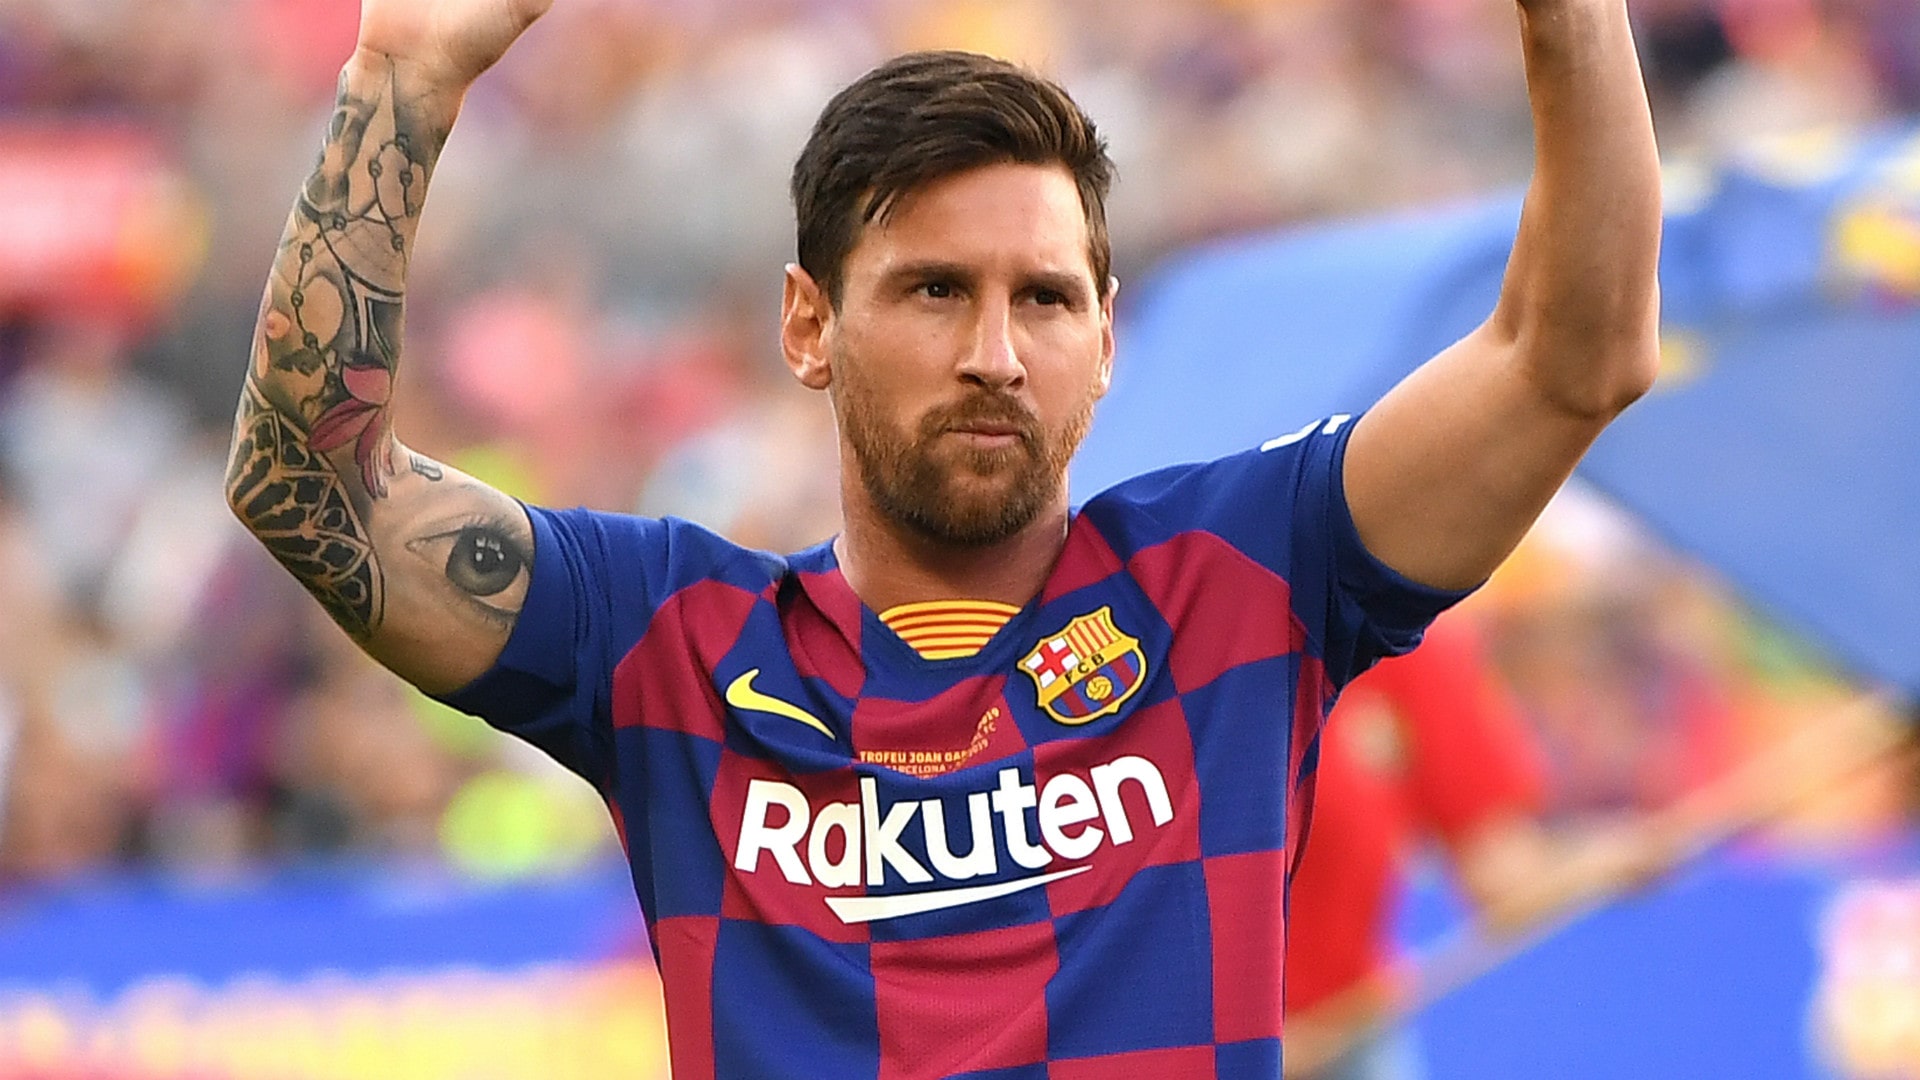 Se cumplen 15 años del debut de Messi en primera división